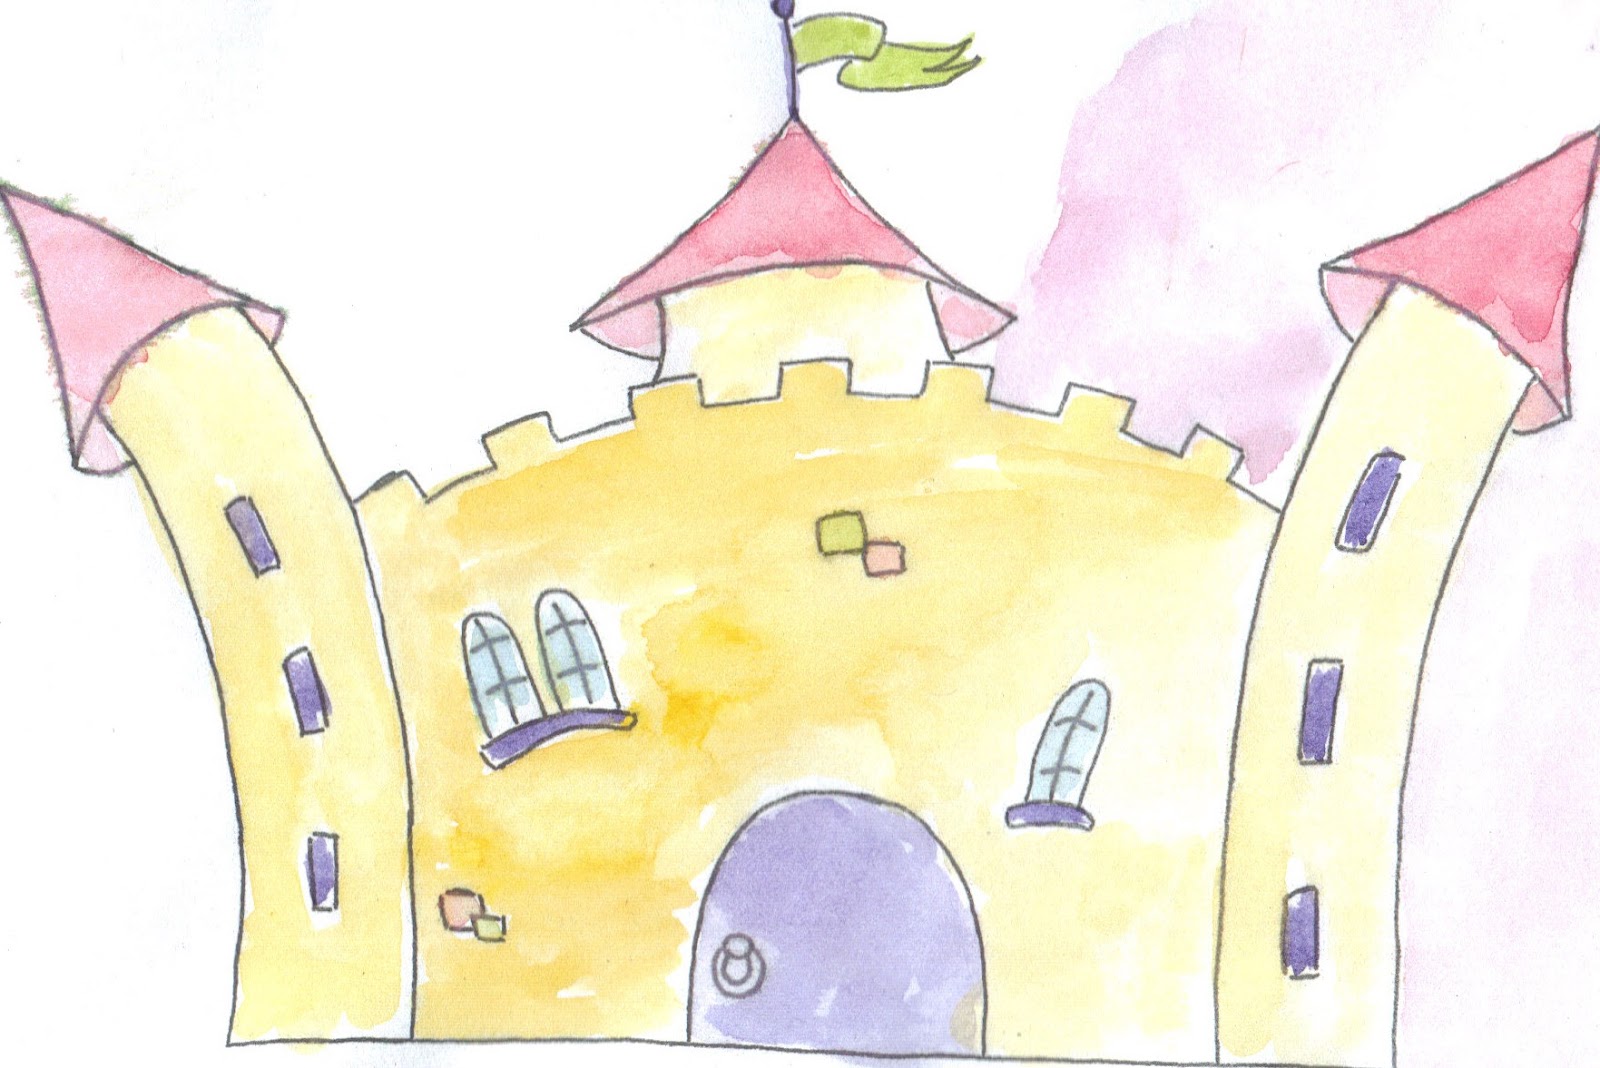 Chambre fille de 4 ans - MAJ huile introuvable Chateau